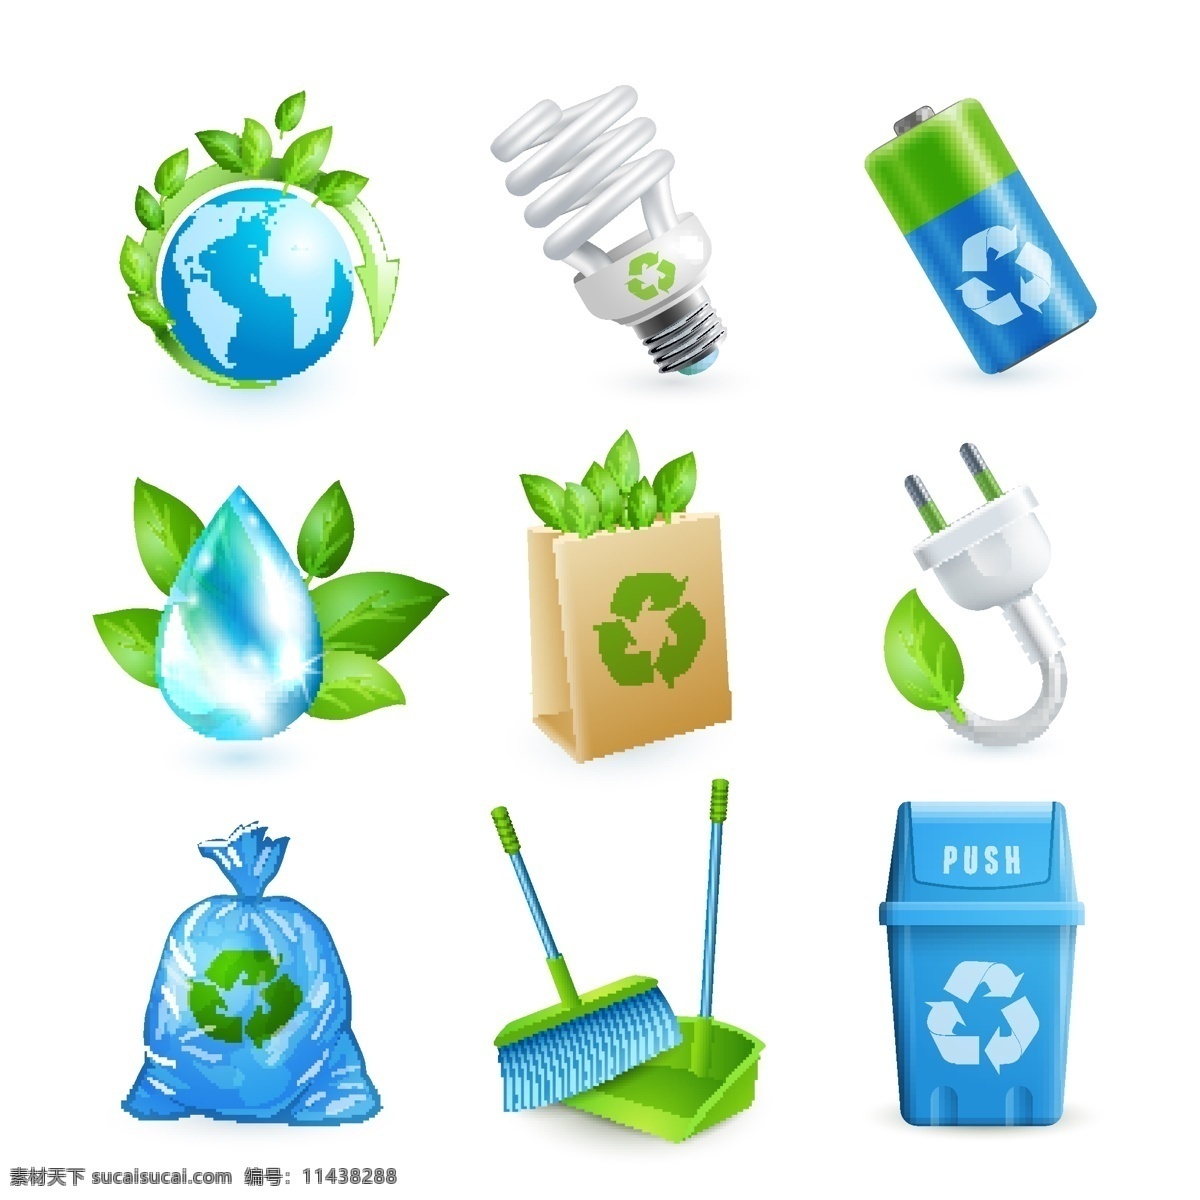 环保图标 节能灯 环保 图标 垃圾箱 电池 素材小内容 标志图标 其他图标